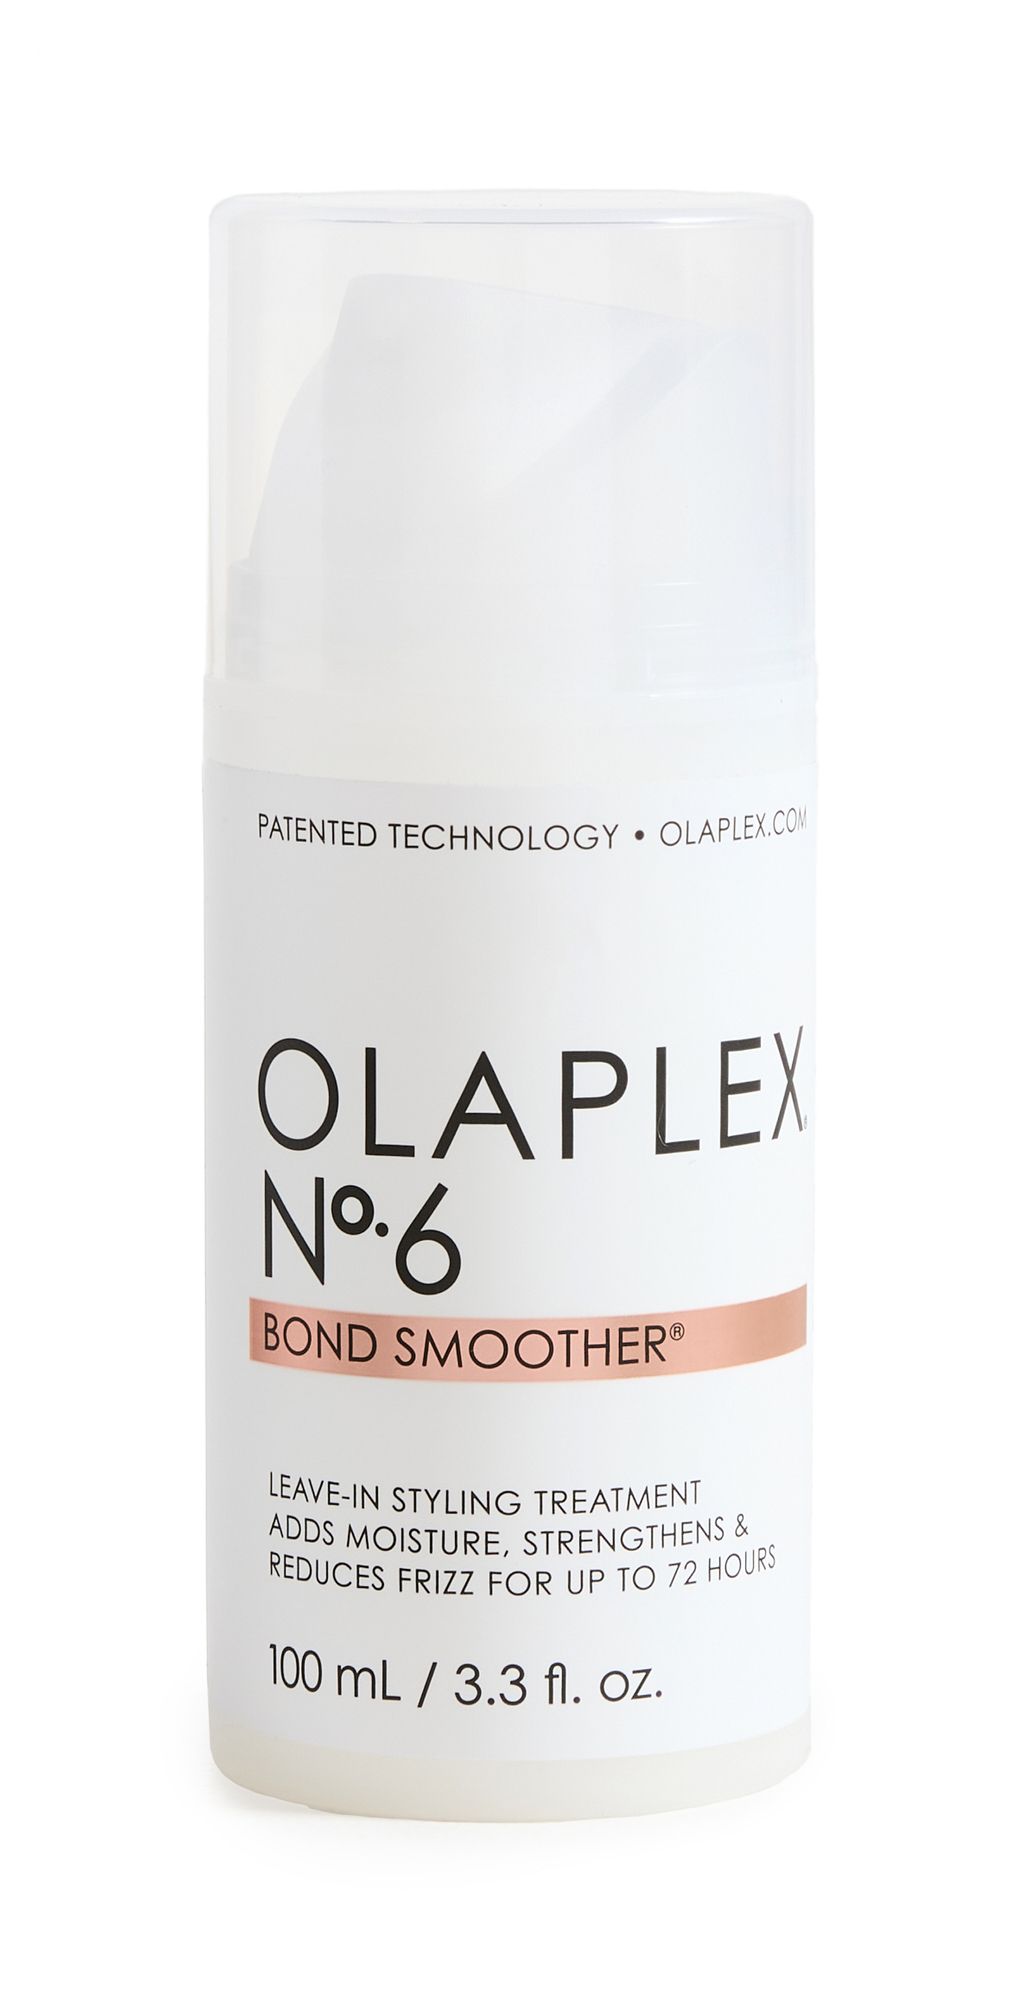 OLAPLEX No.6 Bond Smoother | Shopbop